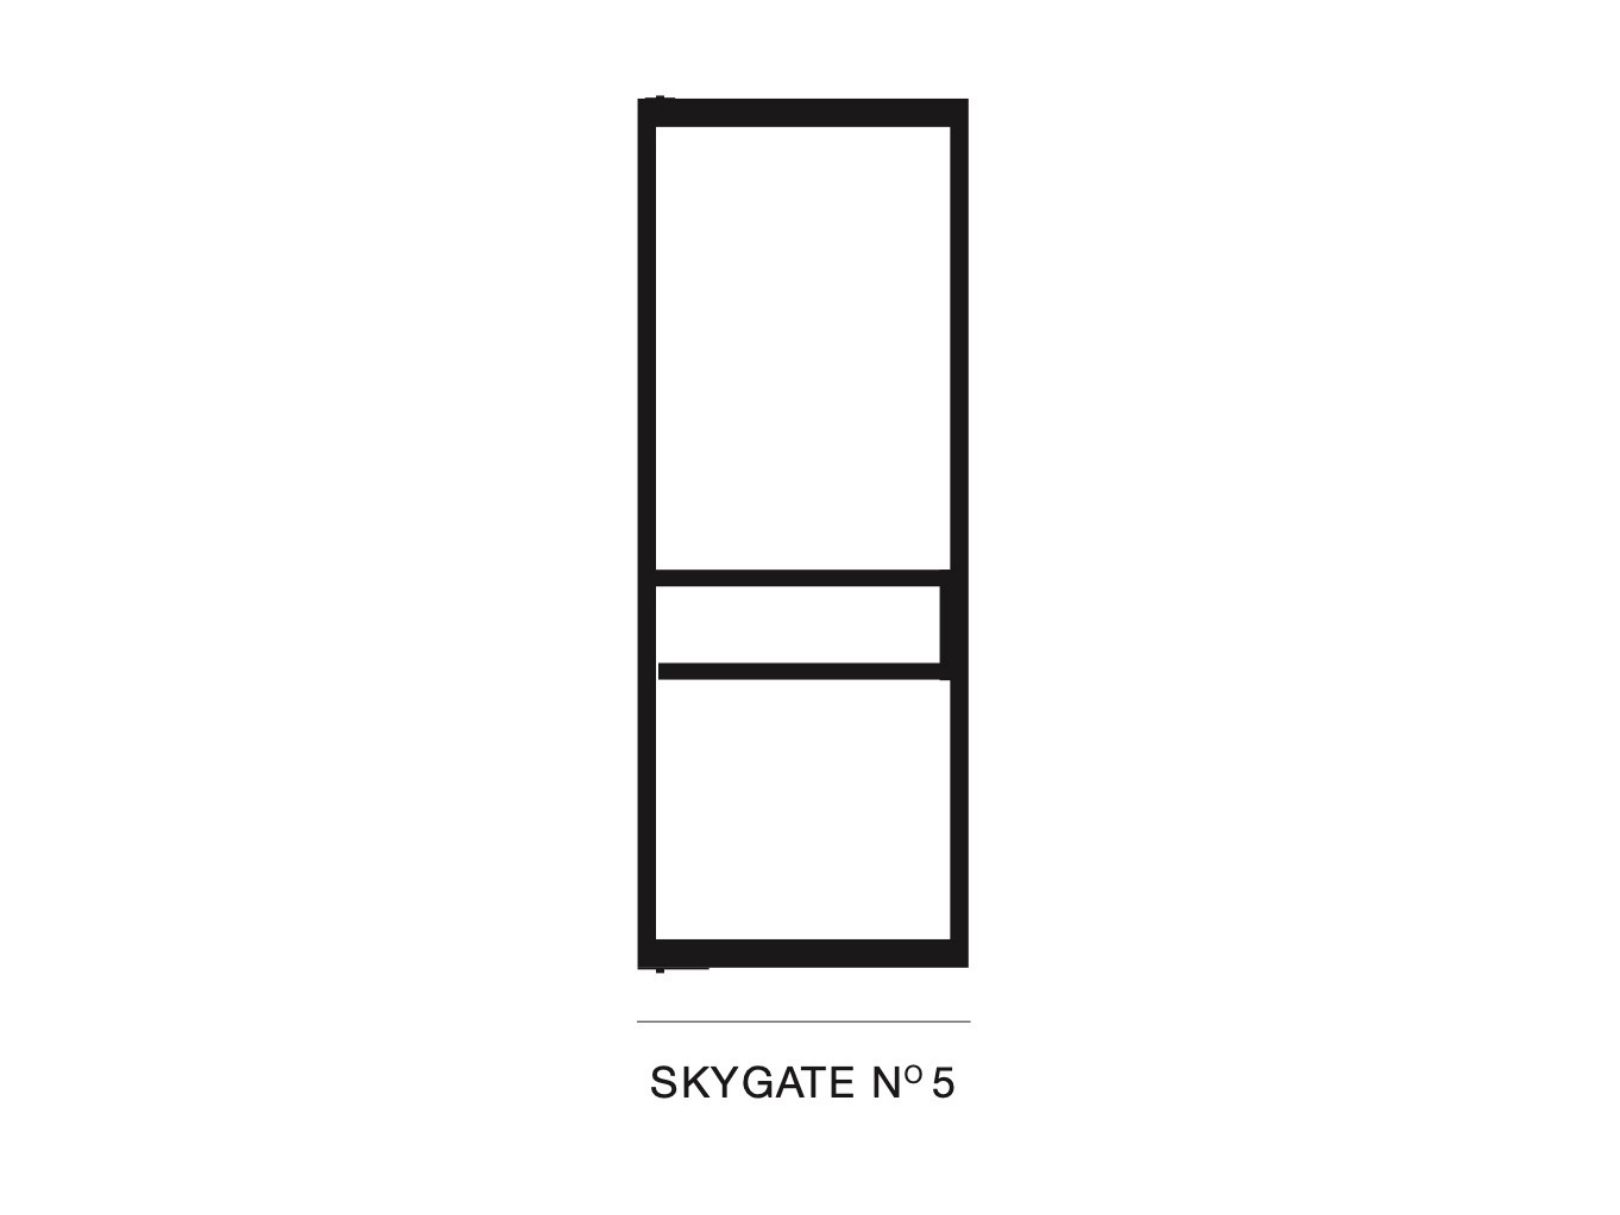 Skygate model Nº5